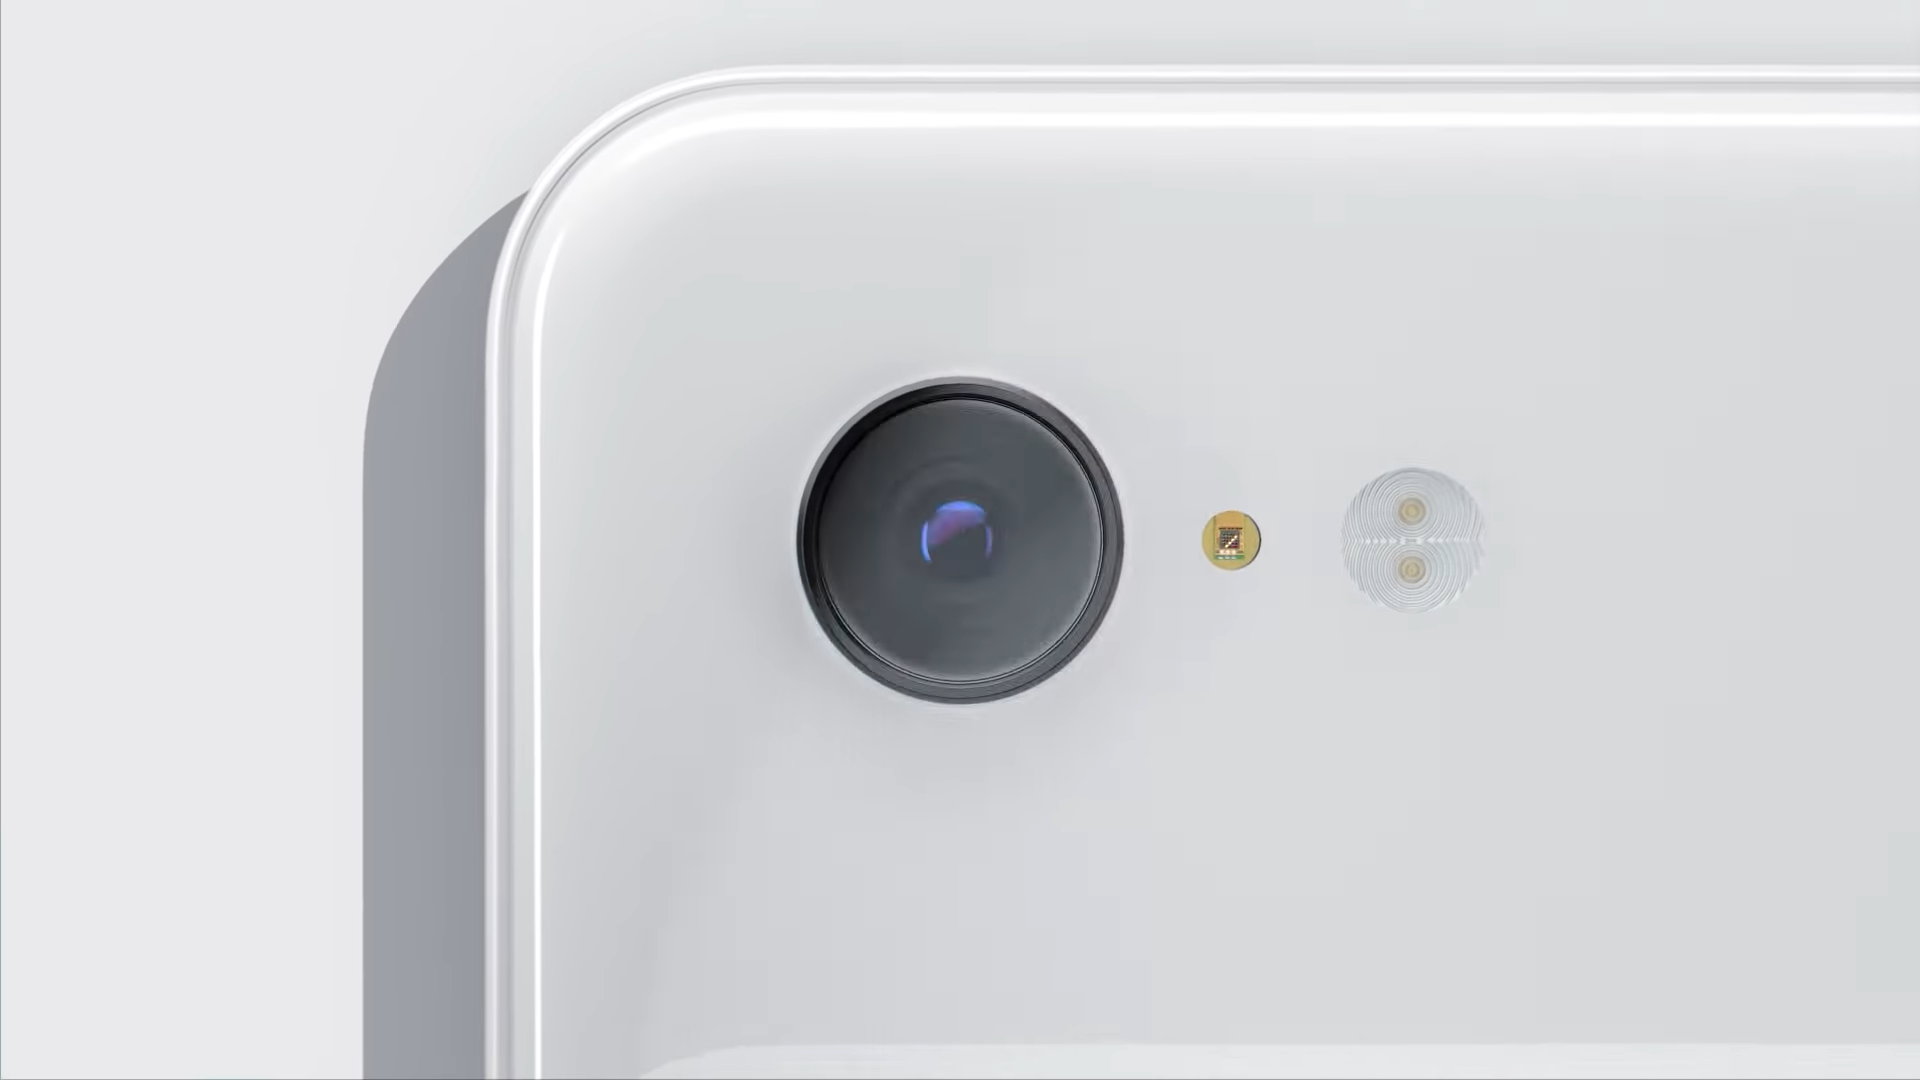 Maklumat Kamera Pixel 3 Kini Diketahui – Menggunakan Sensor Yang Sama Dengan Pocophone F1